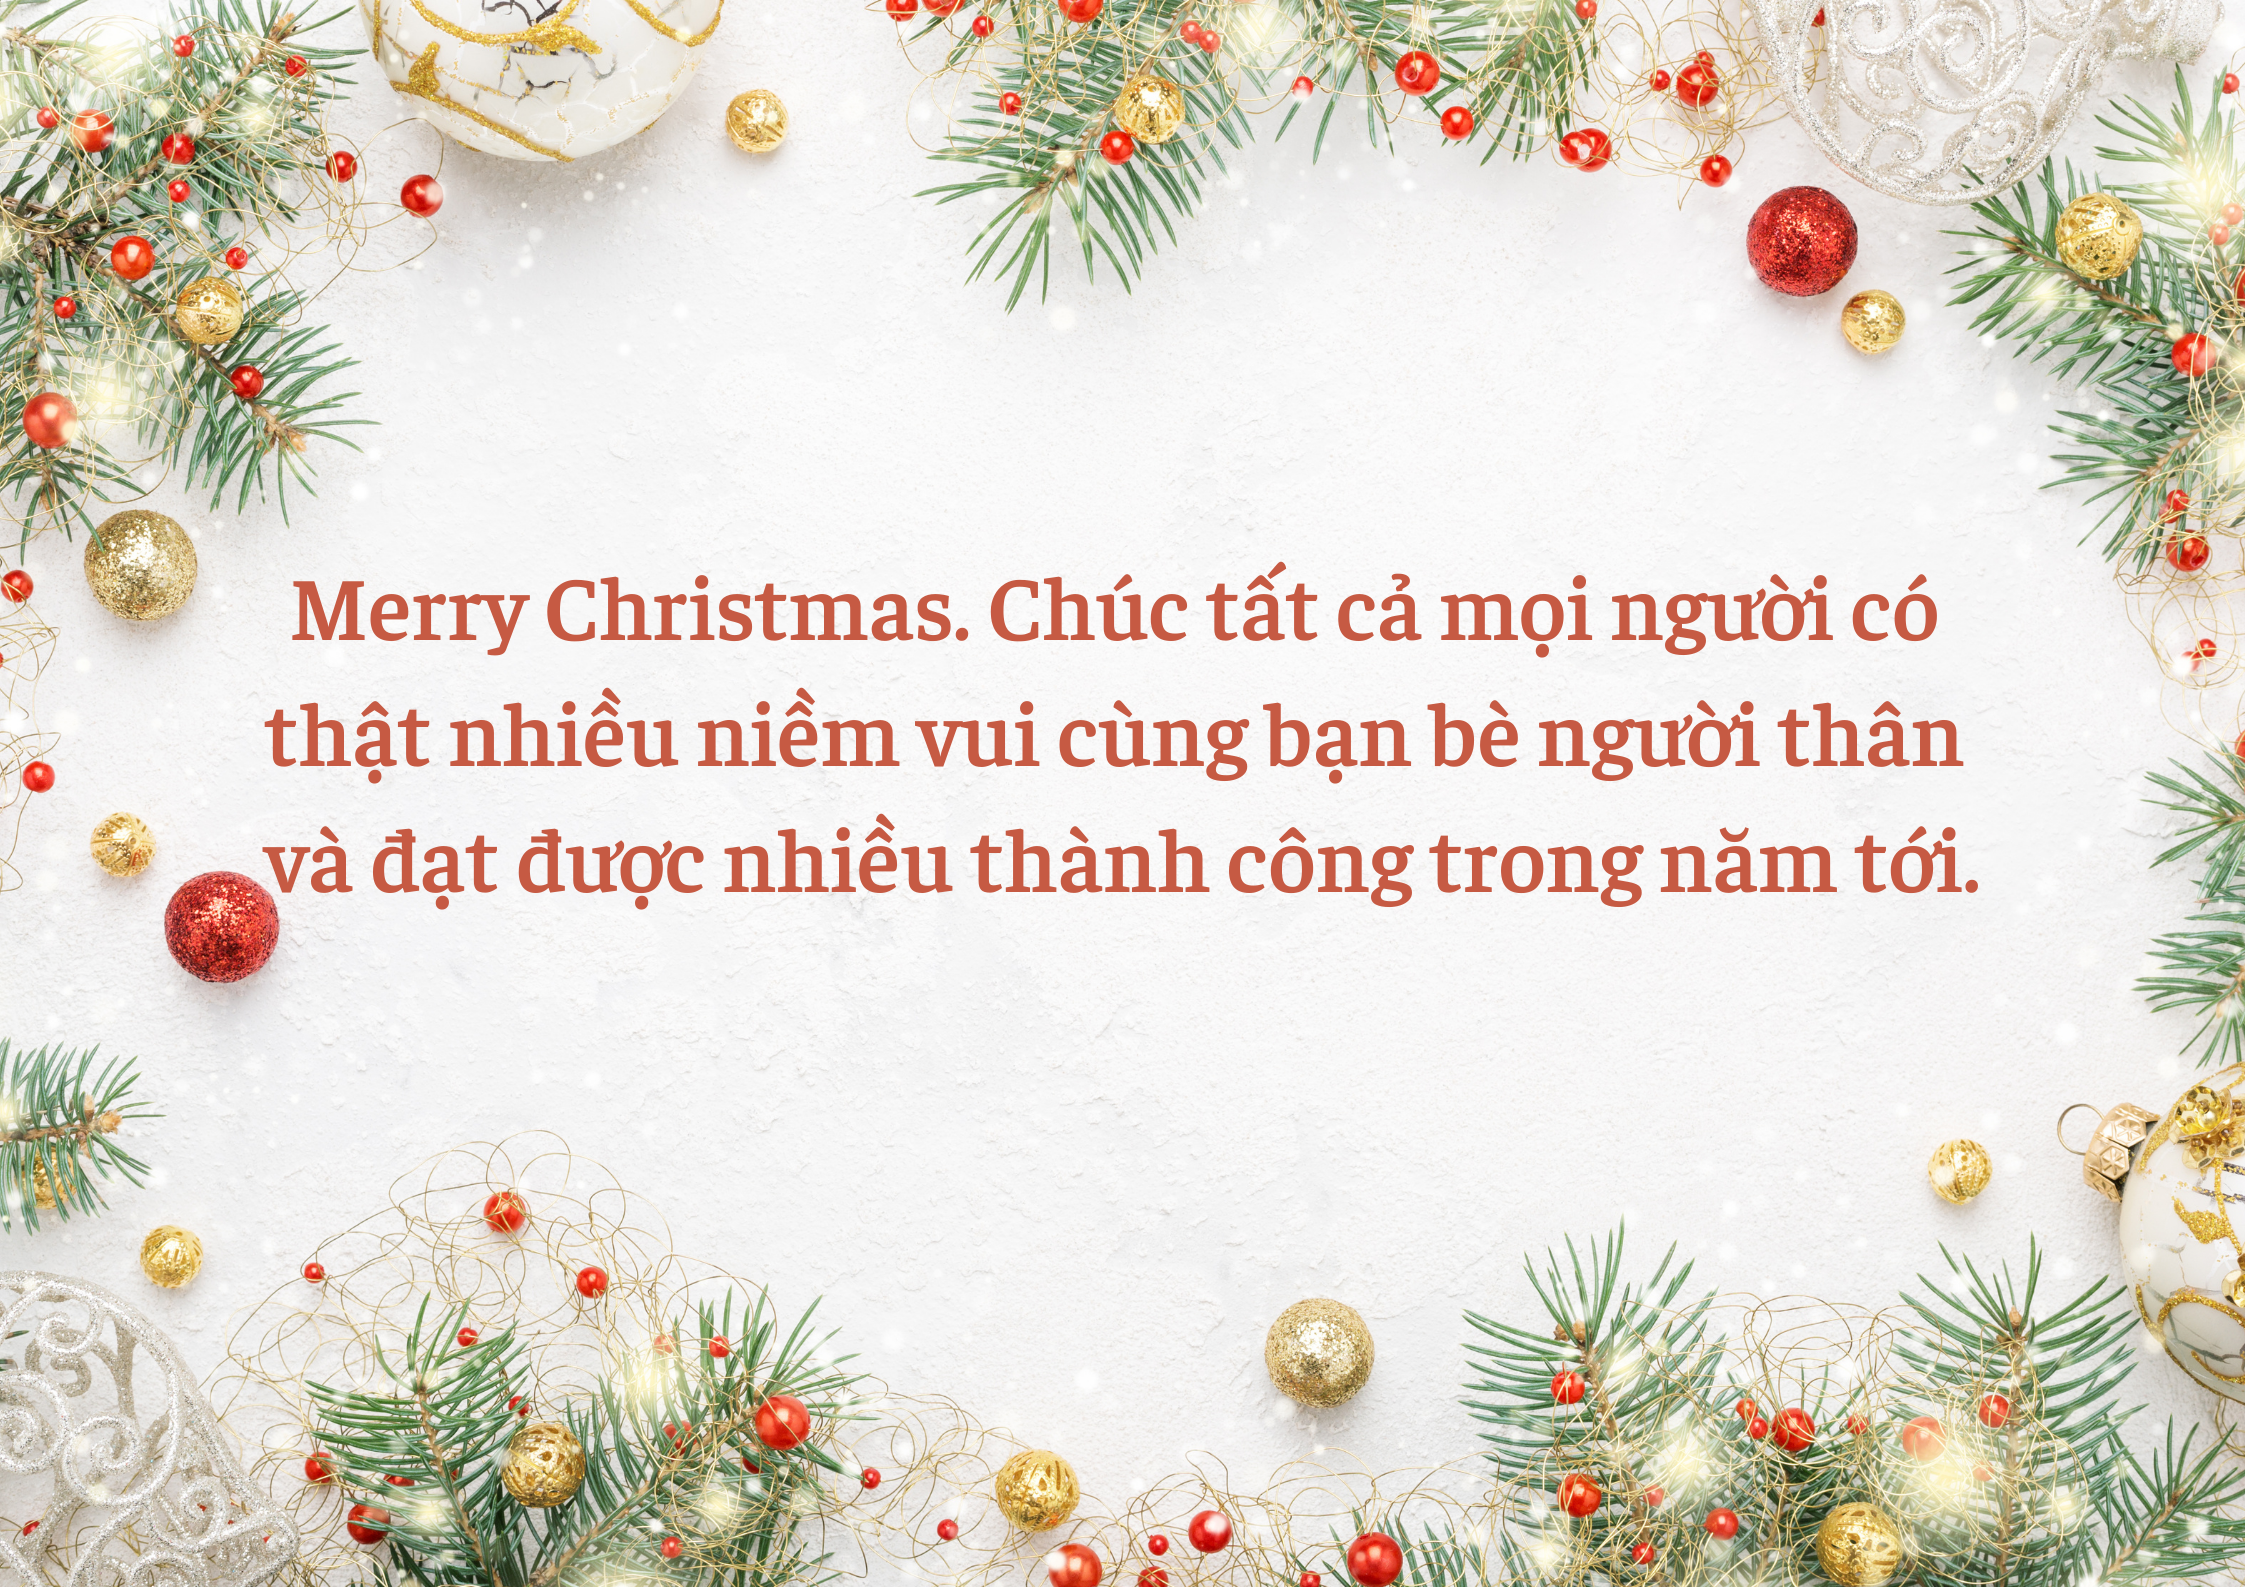 Lời chúc Giáng Sinh: Những lời chúc đặc biệt nhất của chúng tôi dành cho bạn và gia đình trong mùa lễ hội này. Chúng tôi mong rằng những lời chúc này sẽ mang lại những giây phút vui vẻ cho bạn và gia đình.